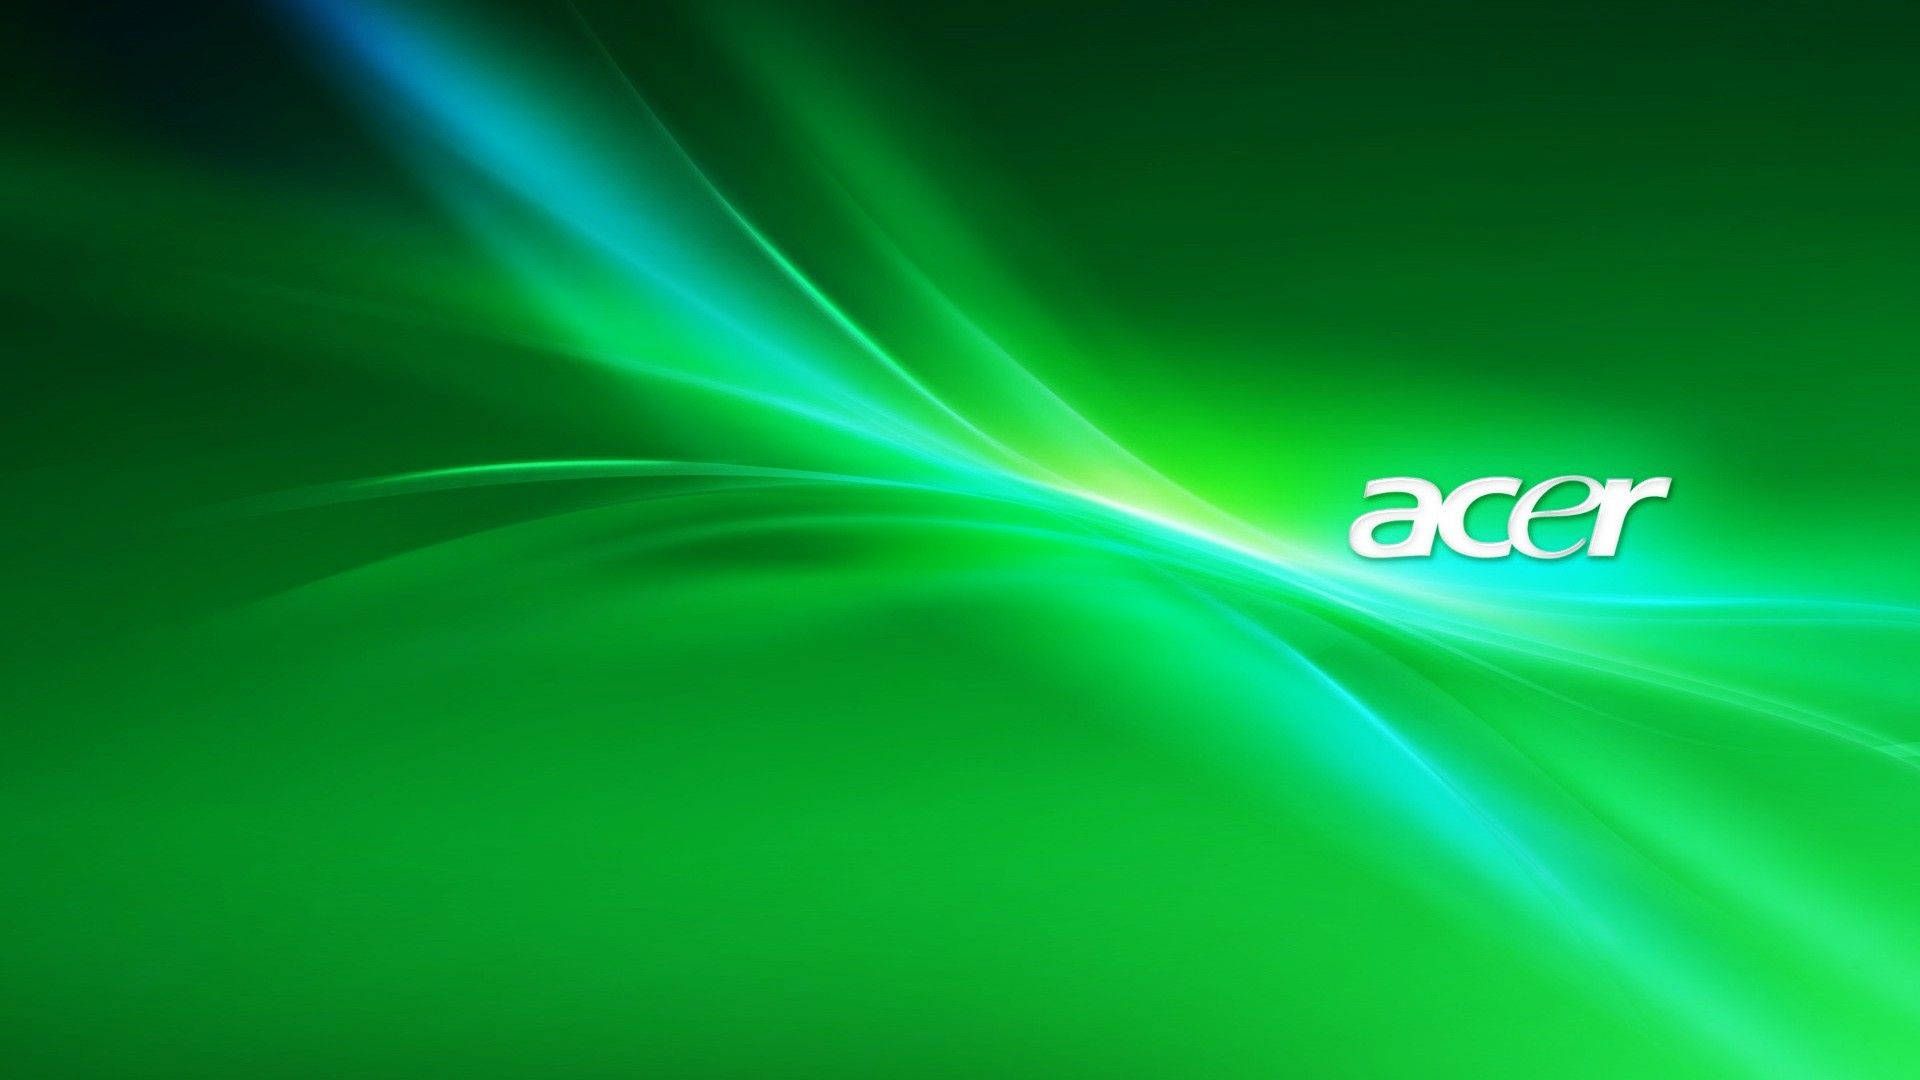  Acer Hintergrundbild 1920x1080. Acer Background